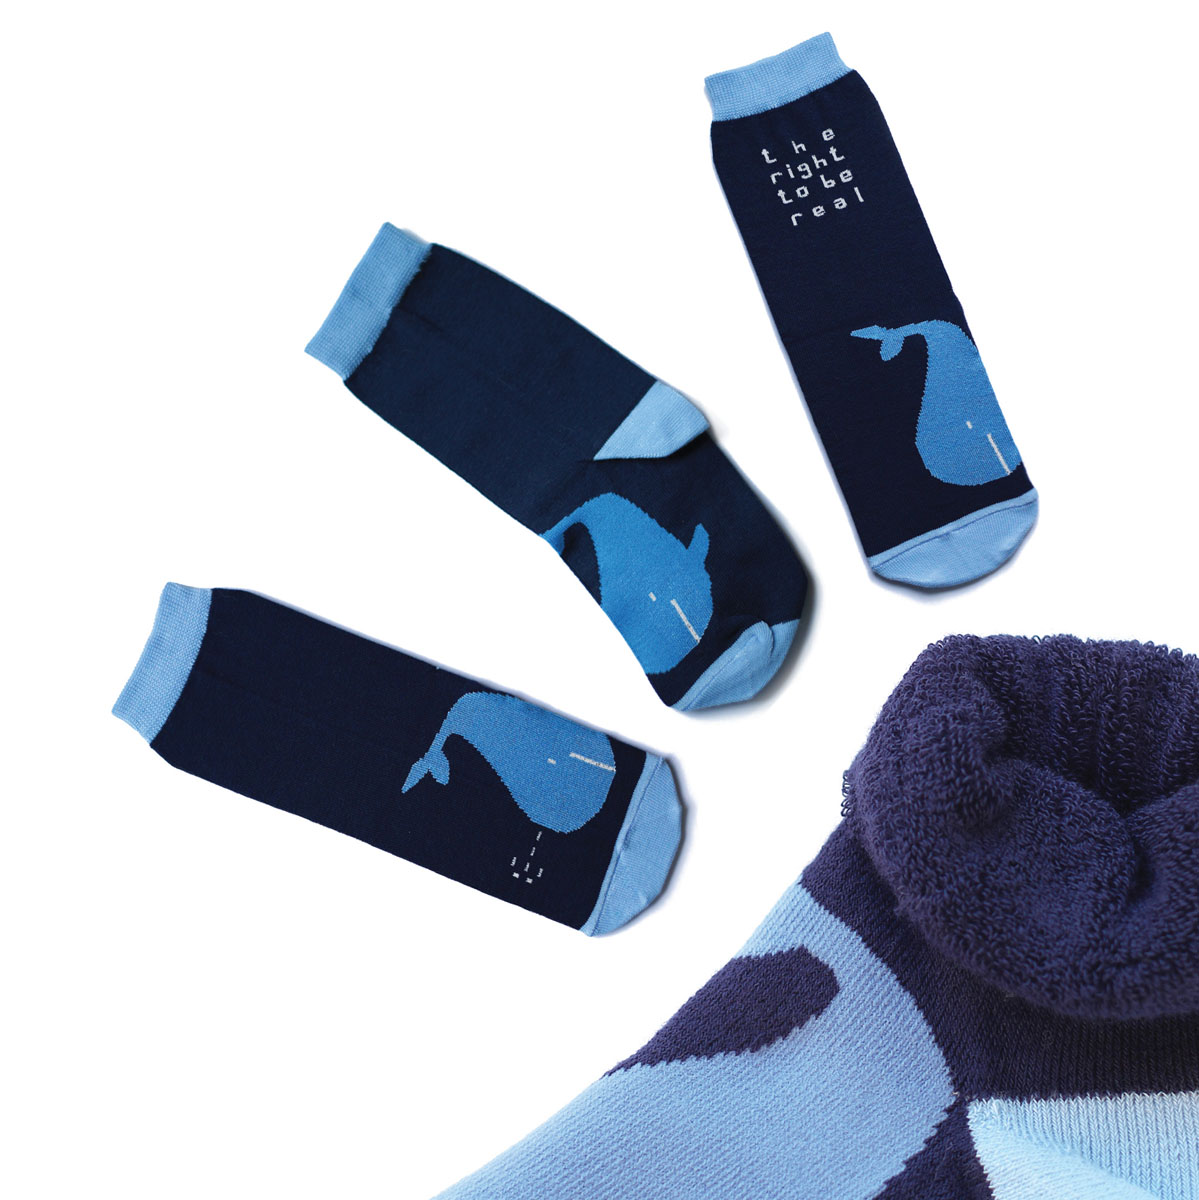 Носки женские Big Bang Socks Кит, махровые, цвет: голубой, темно-синий. a133. Размер 35/39